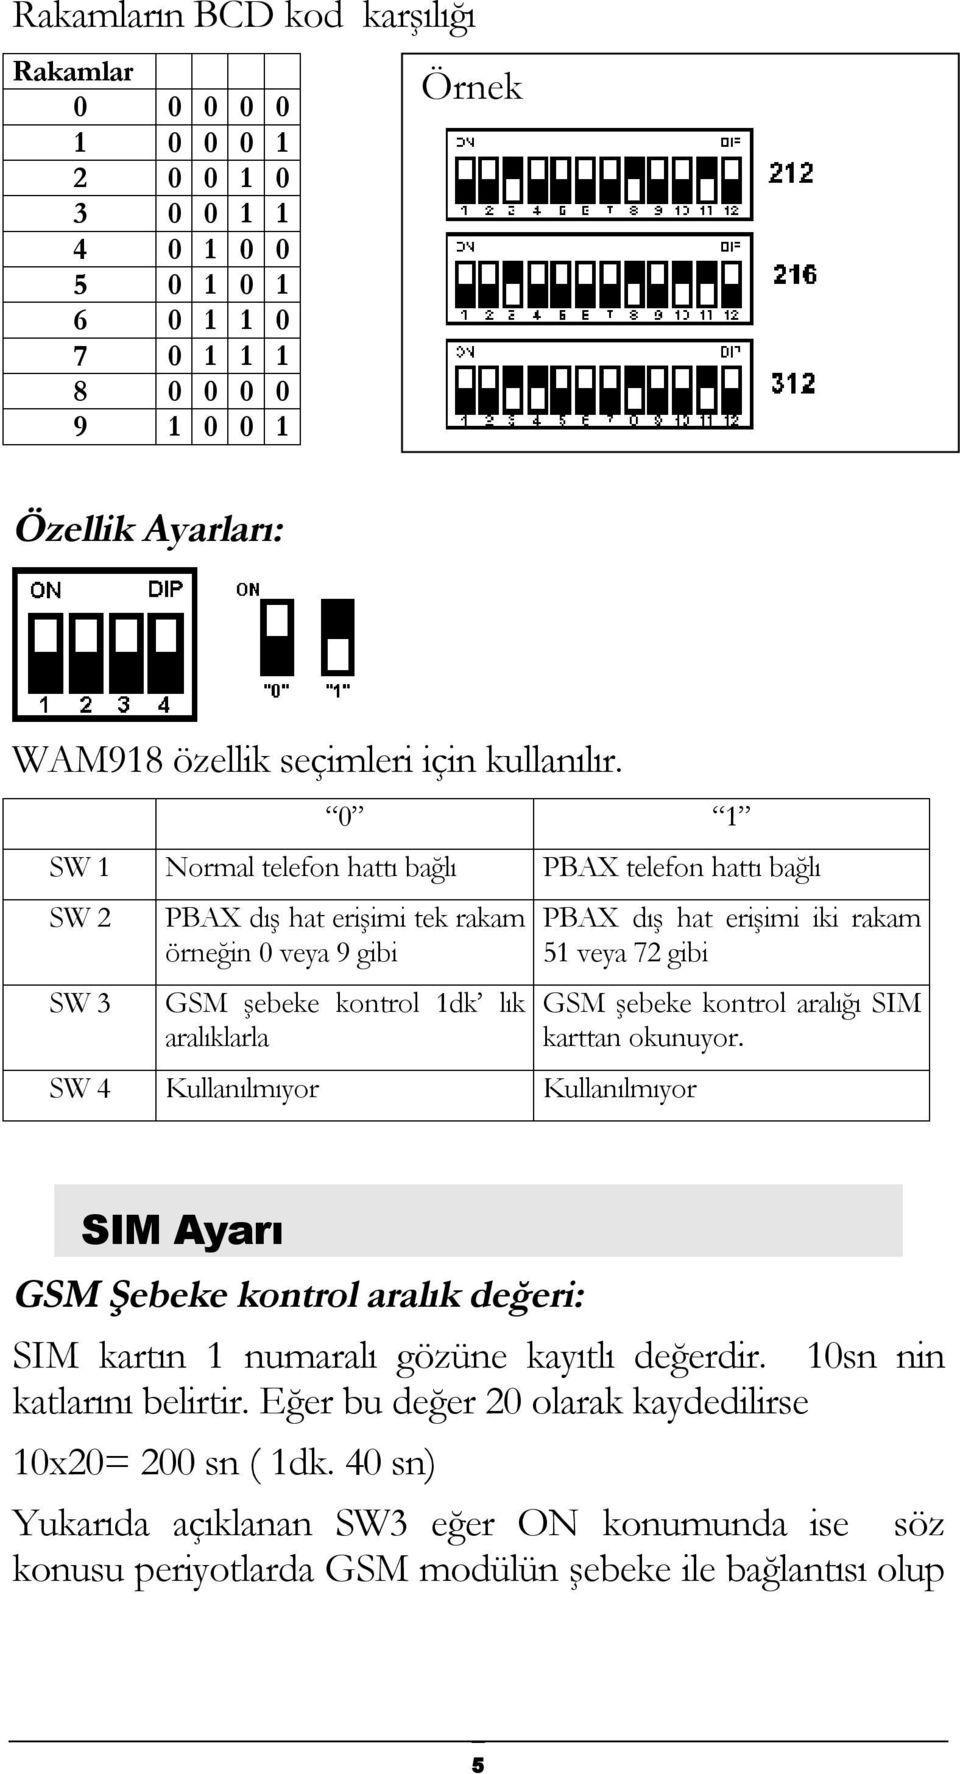 0 1 SW 1 Normal telefon hattı bağlı PBAX telefon hattı bağlı SW 2 SW 3 PBAX dış hat erişimi tek rakam örneğin 0 veya 9 gibi GSM şebeke kontrol 1dk lık aralıklarla SW 4 Kullanılmıyor Kullanılmıyor